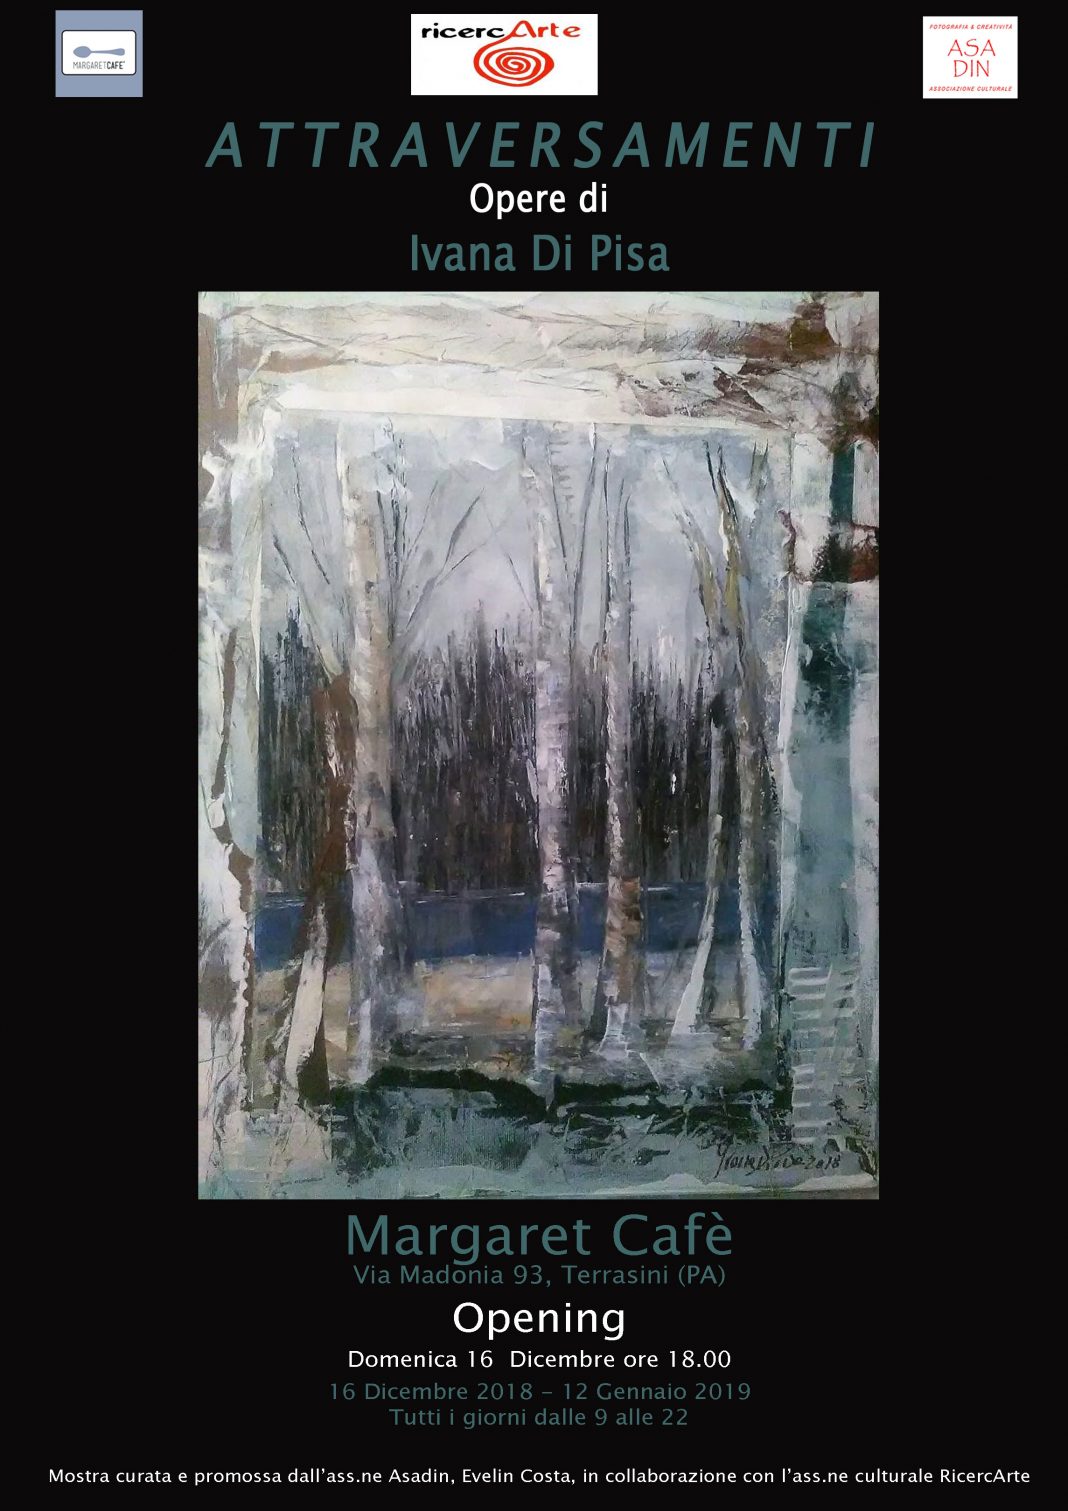 Ivana Di Pisa – Attraversamentihttps://www.exibart.com/repository/media/eventi/2018/12/ivana-di-pisa-8211-attraversamenti-1068x1511.jpg